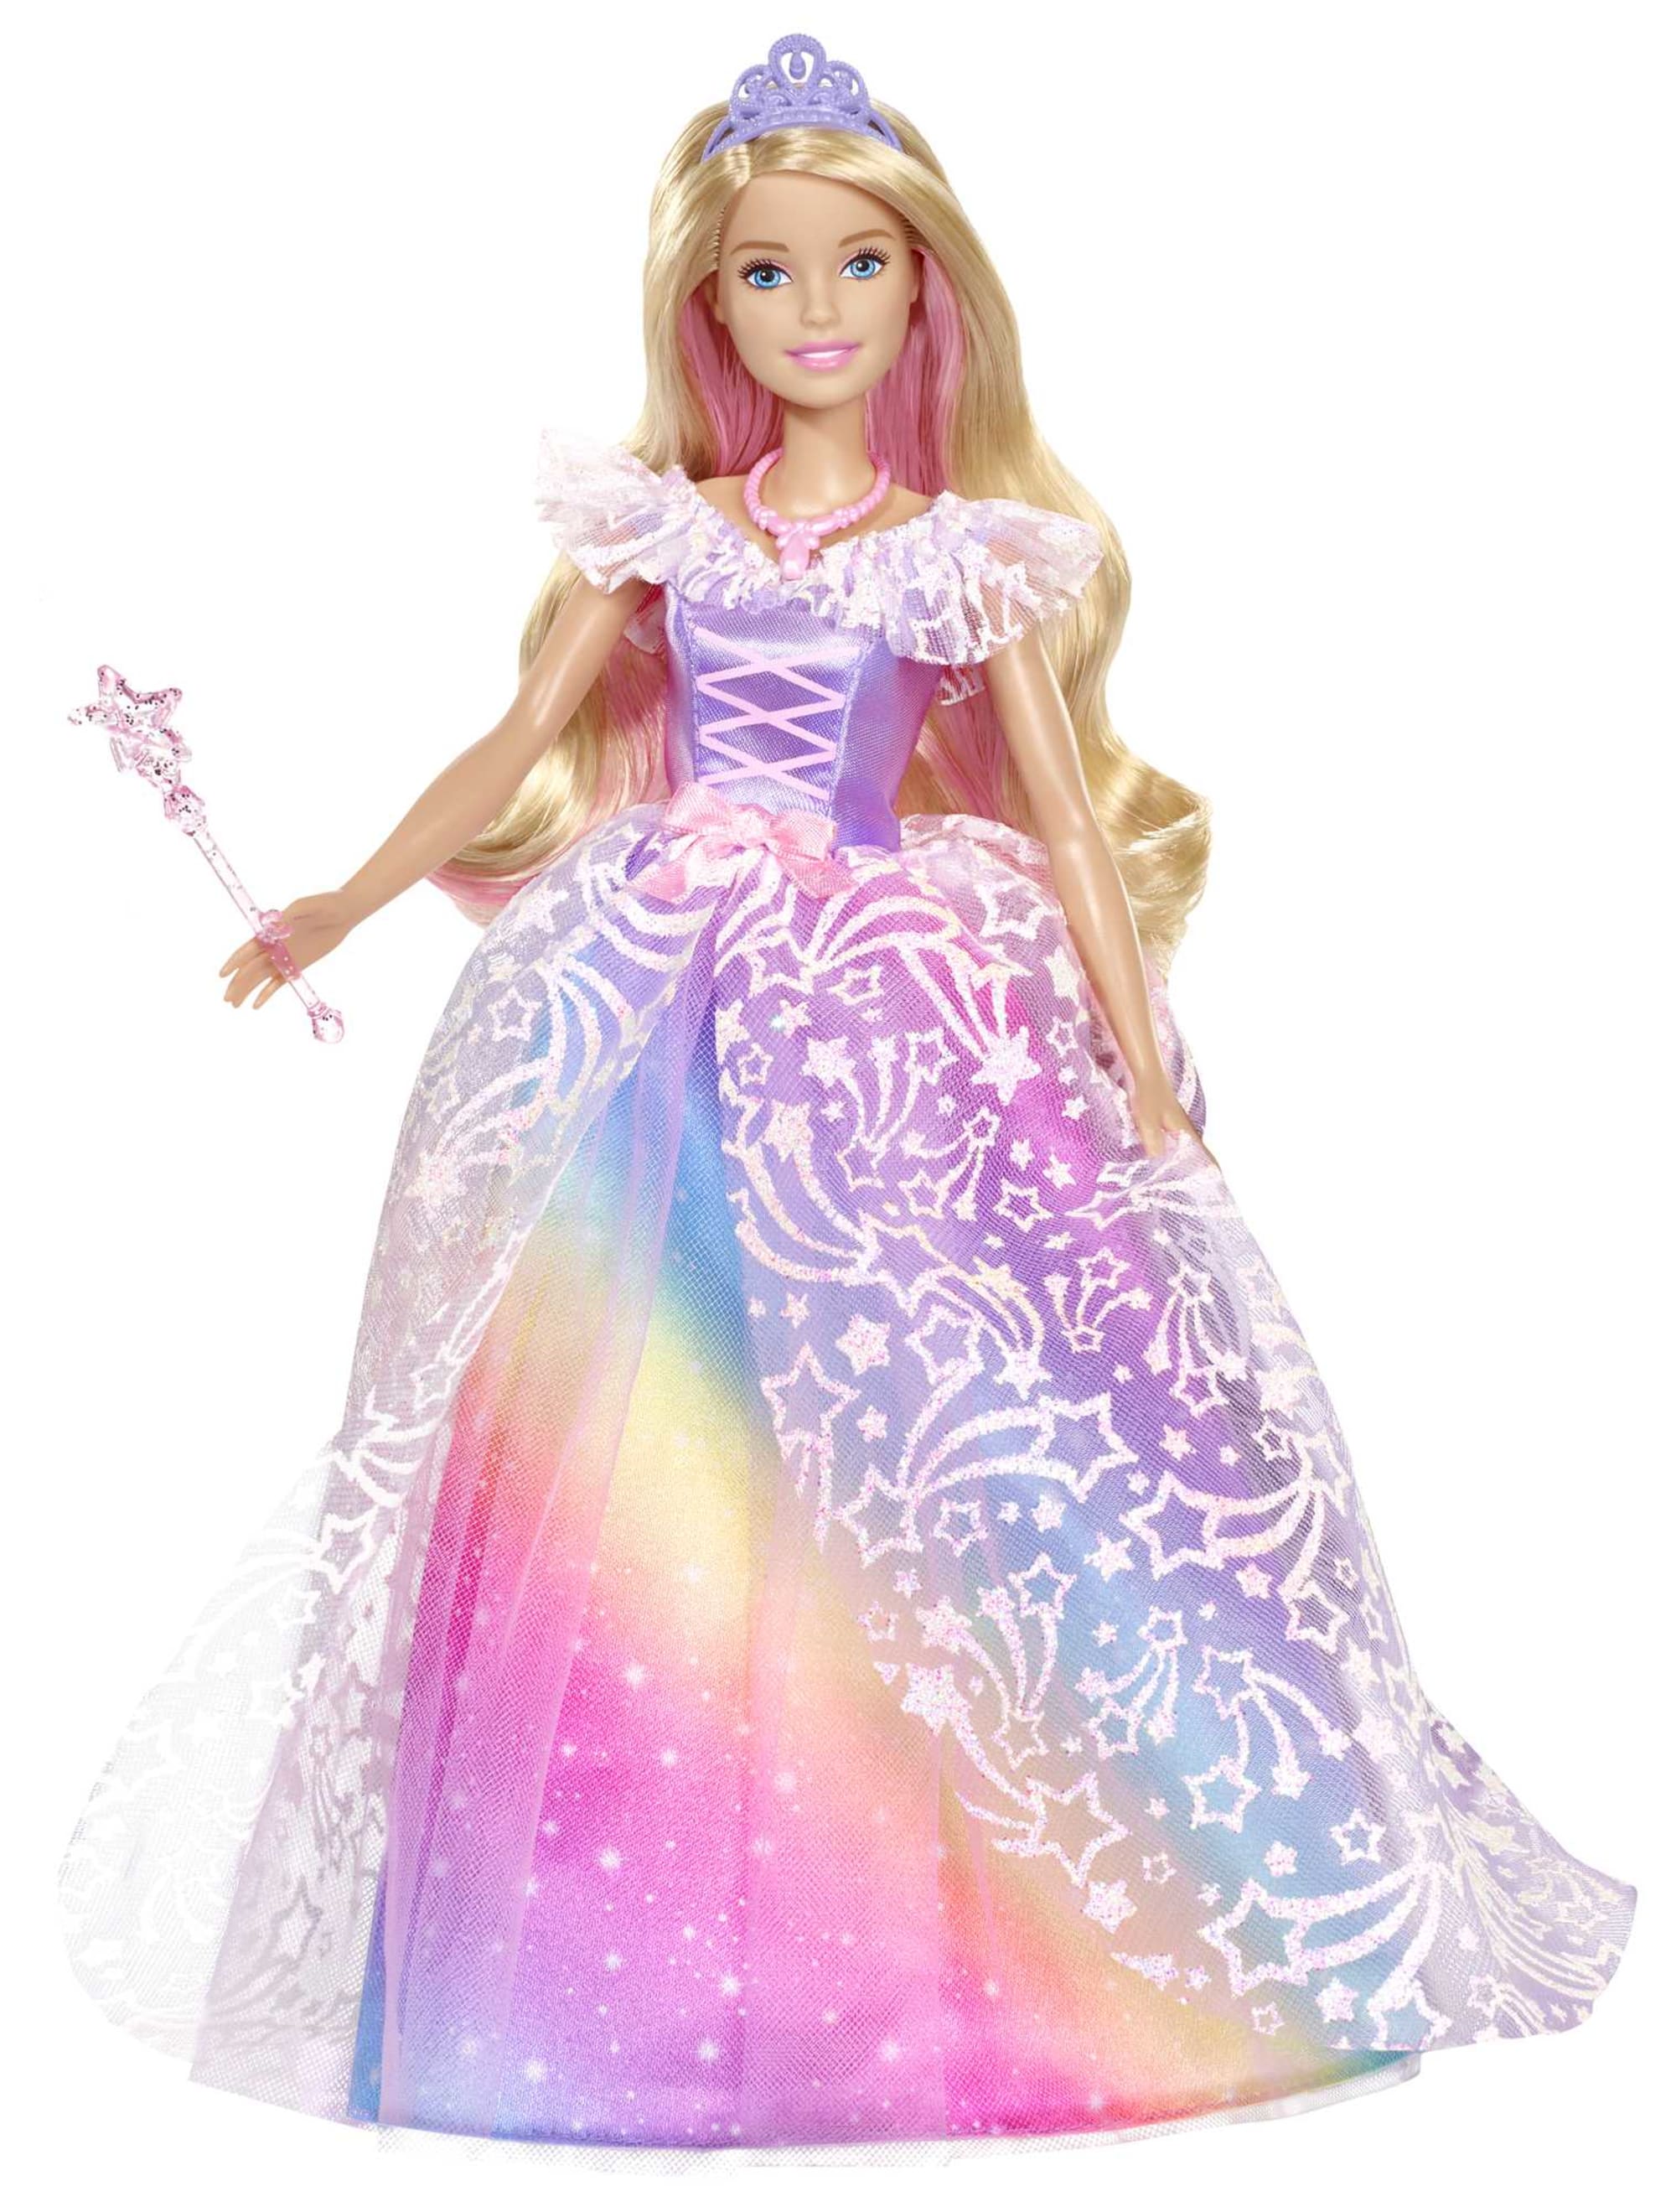 Poupée Barbie super princesse